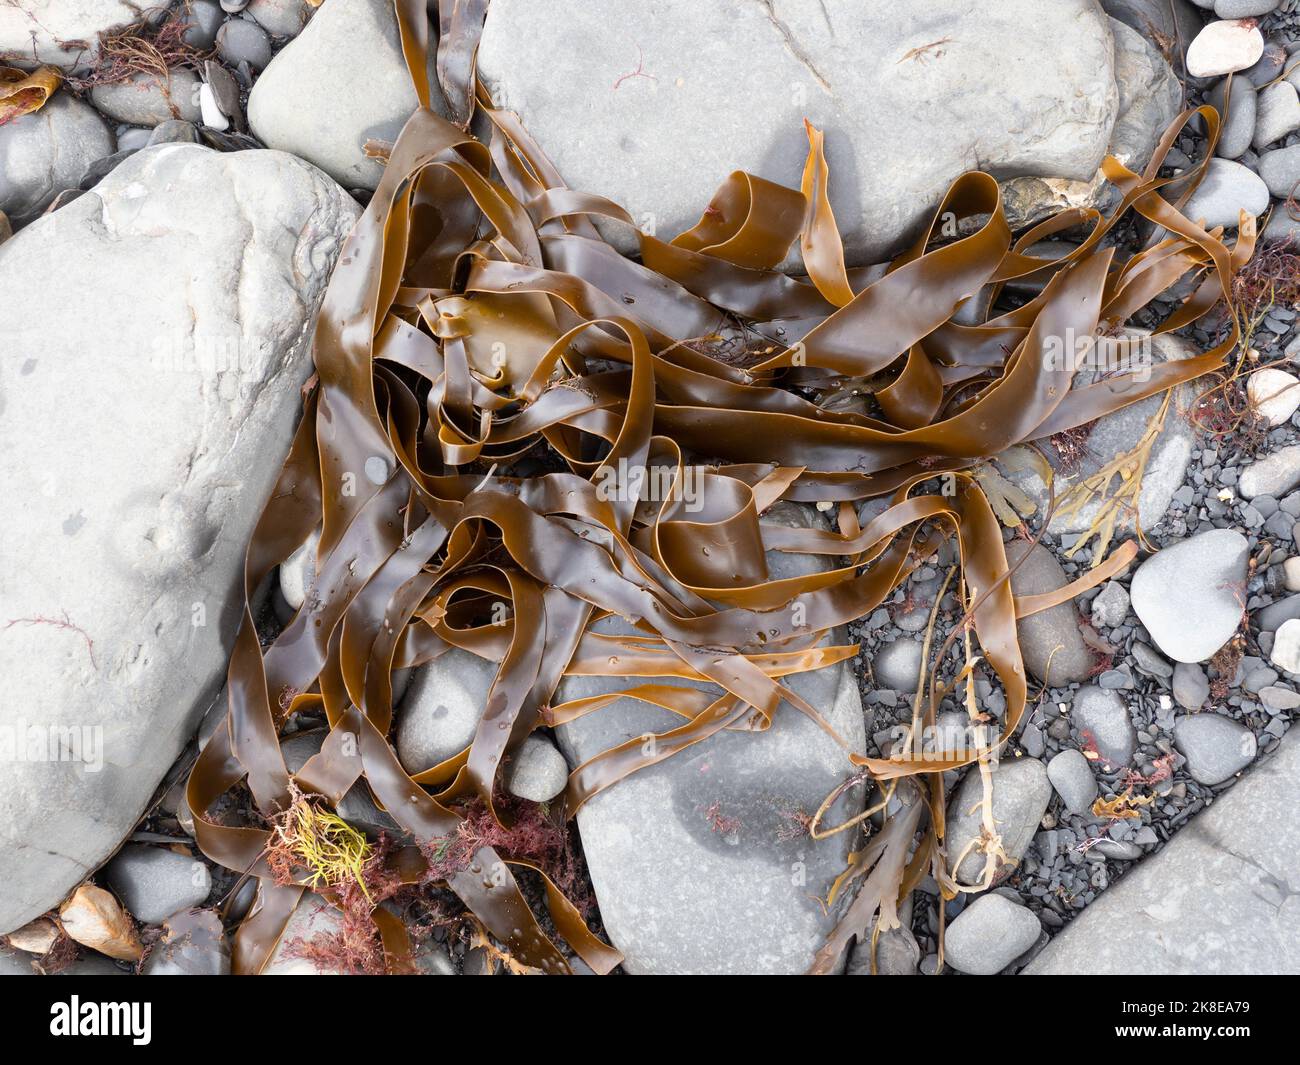 Wrack and seaweed on tideline Kimmeridge Bay, dorset Stock Photo